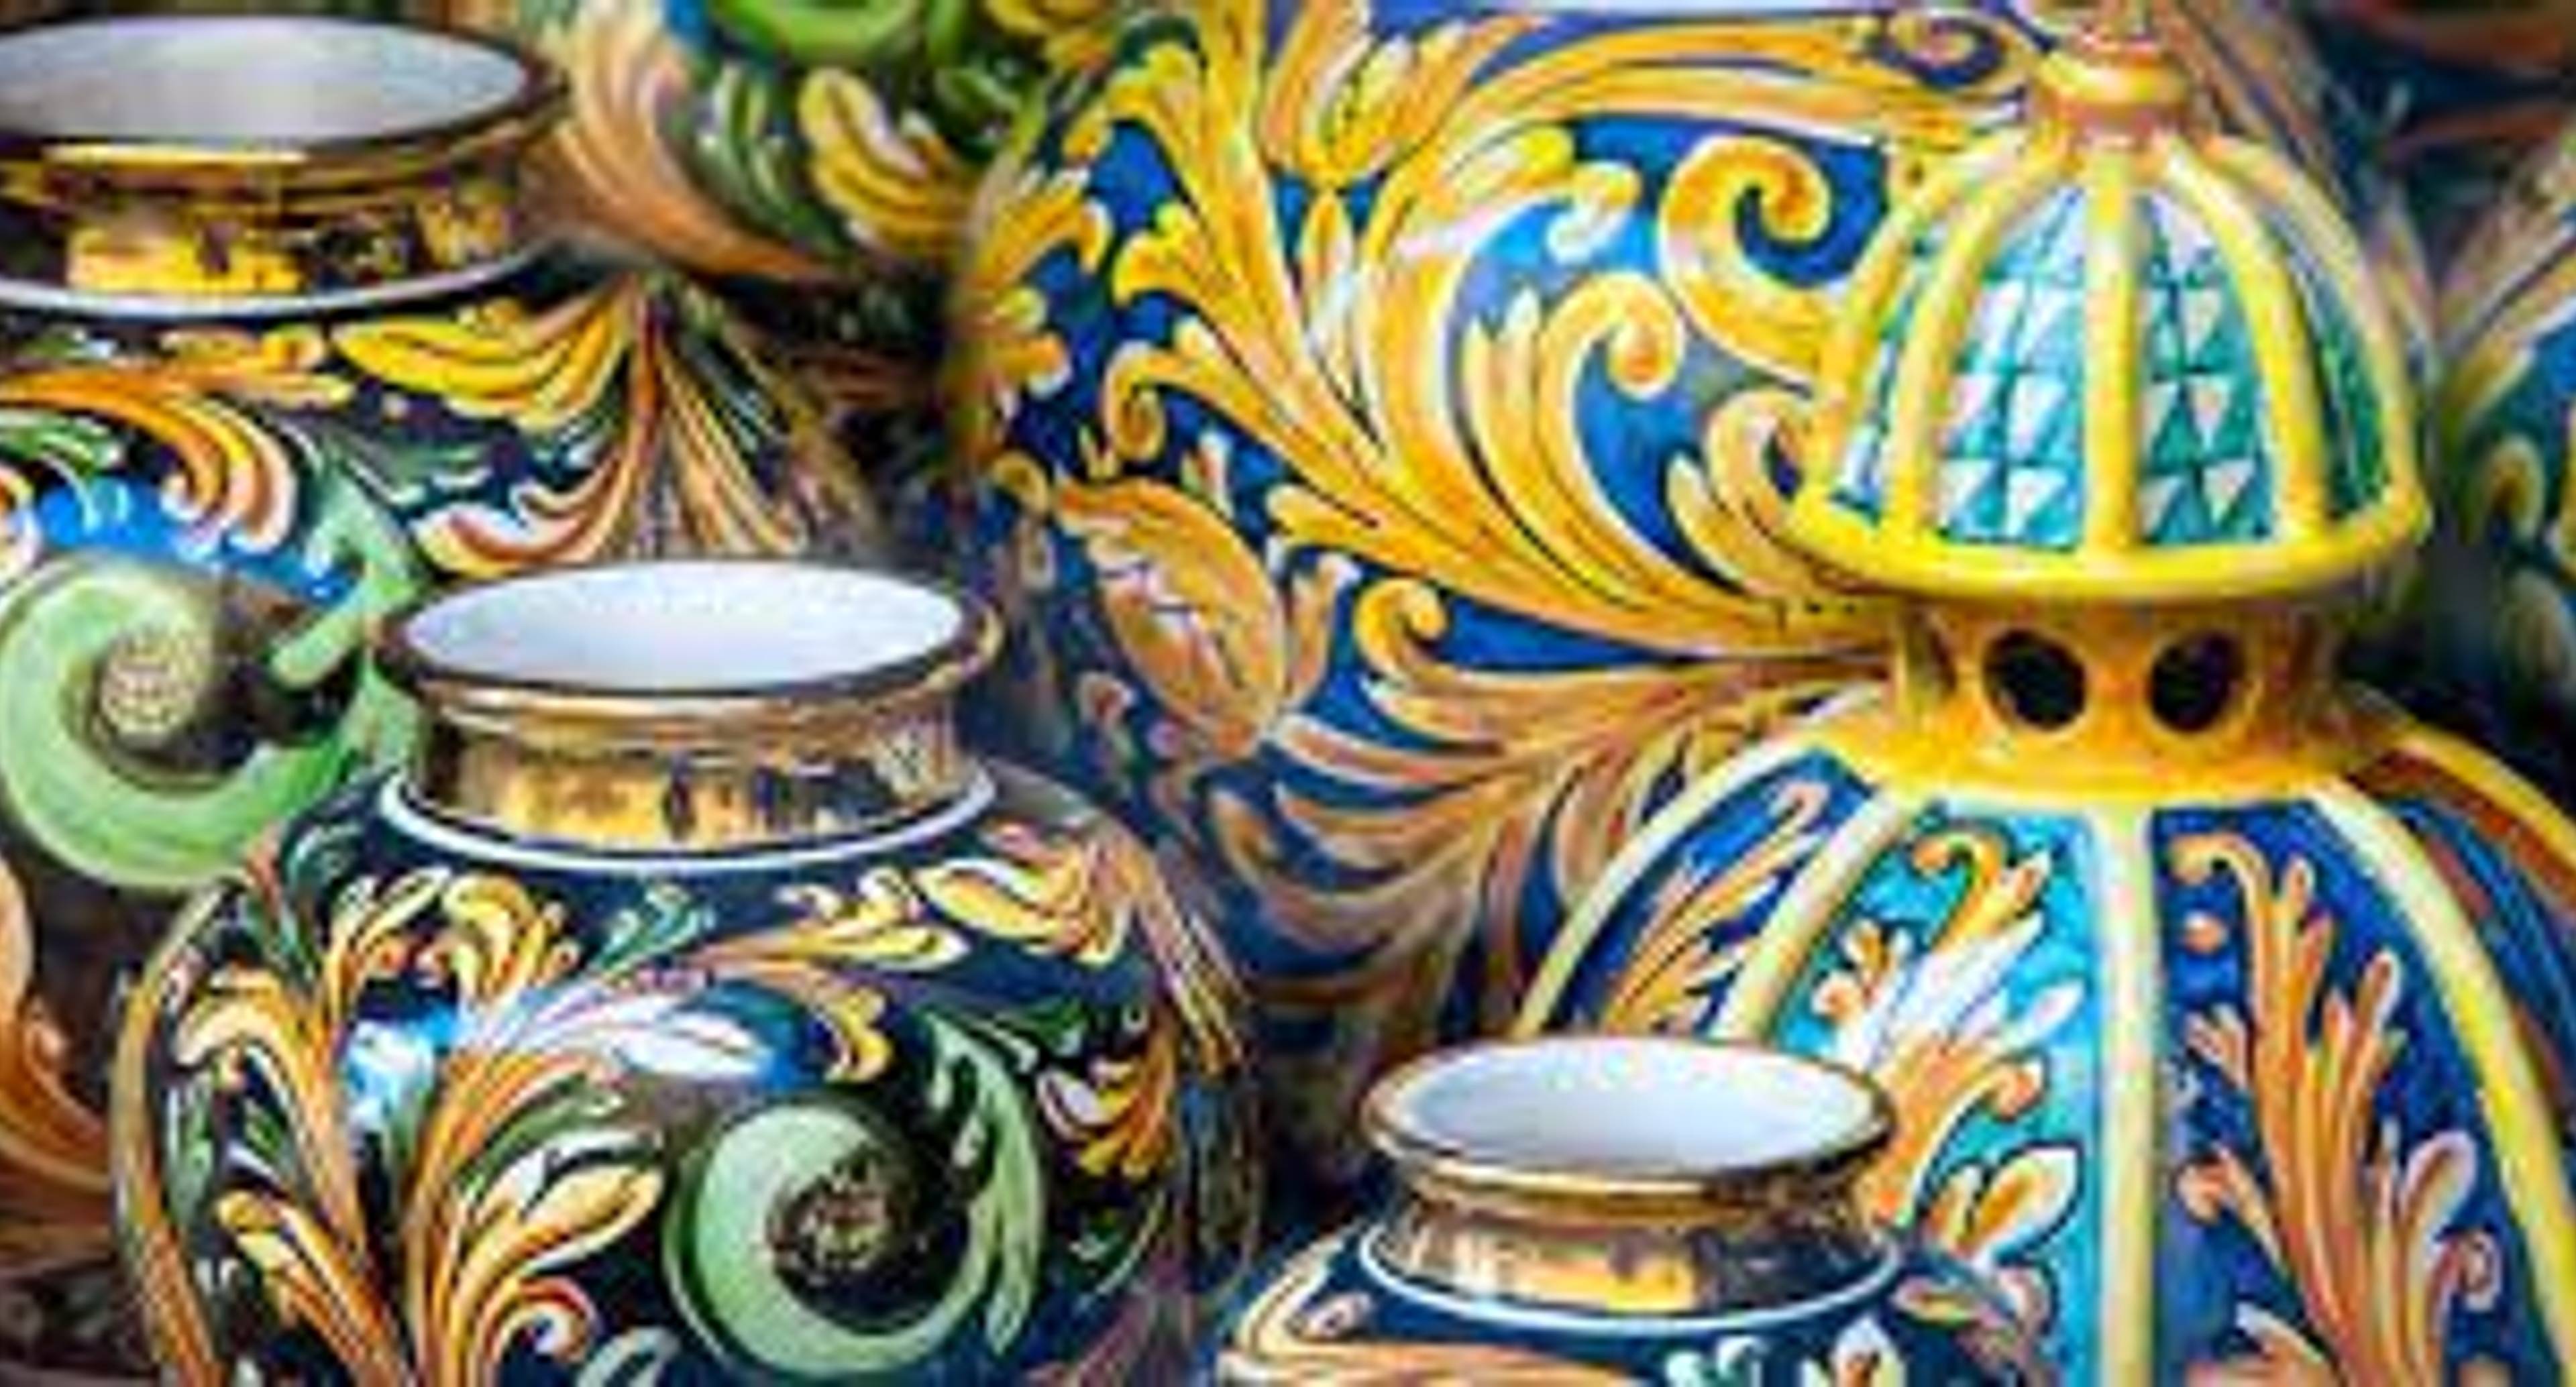 The amazing Caltagirone ceramics!